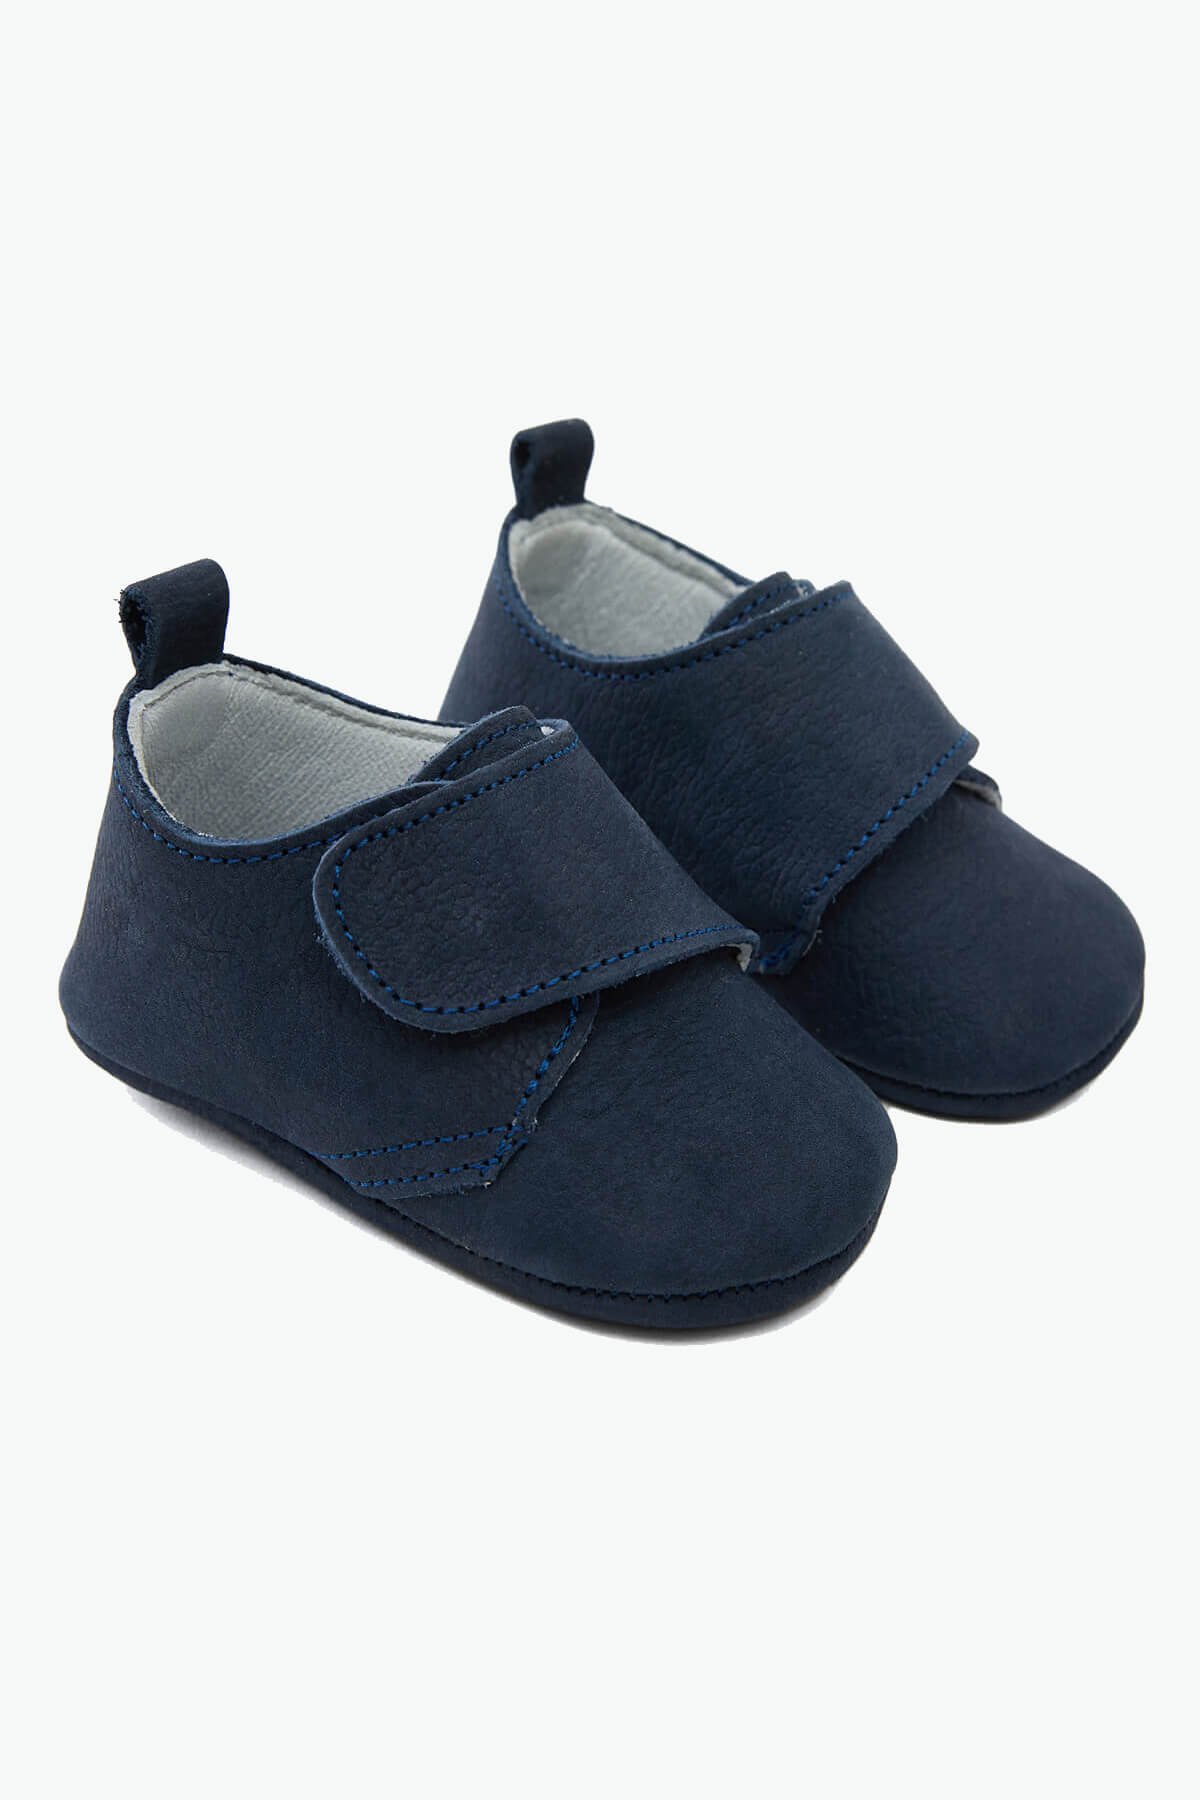 Детская обувь из натуральной кожи на липучках темно-синего цвета